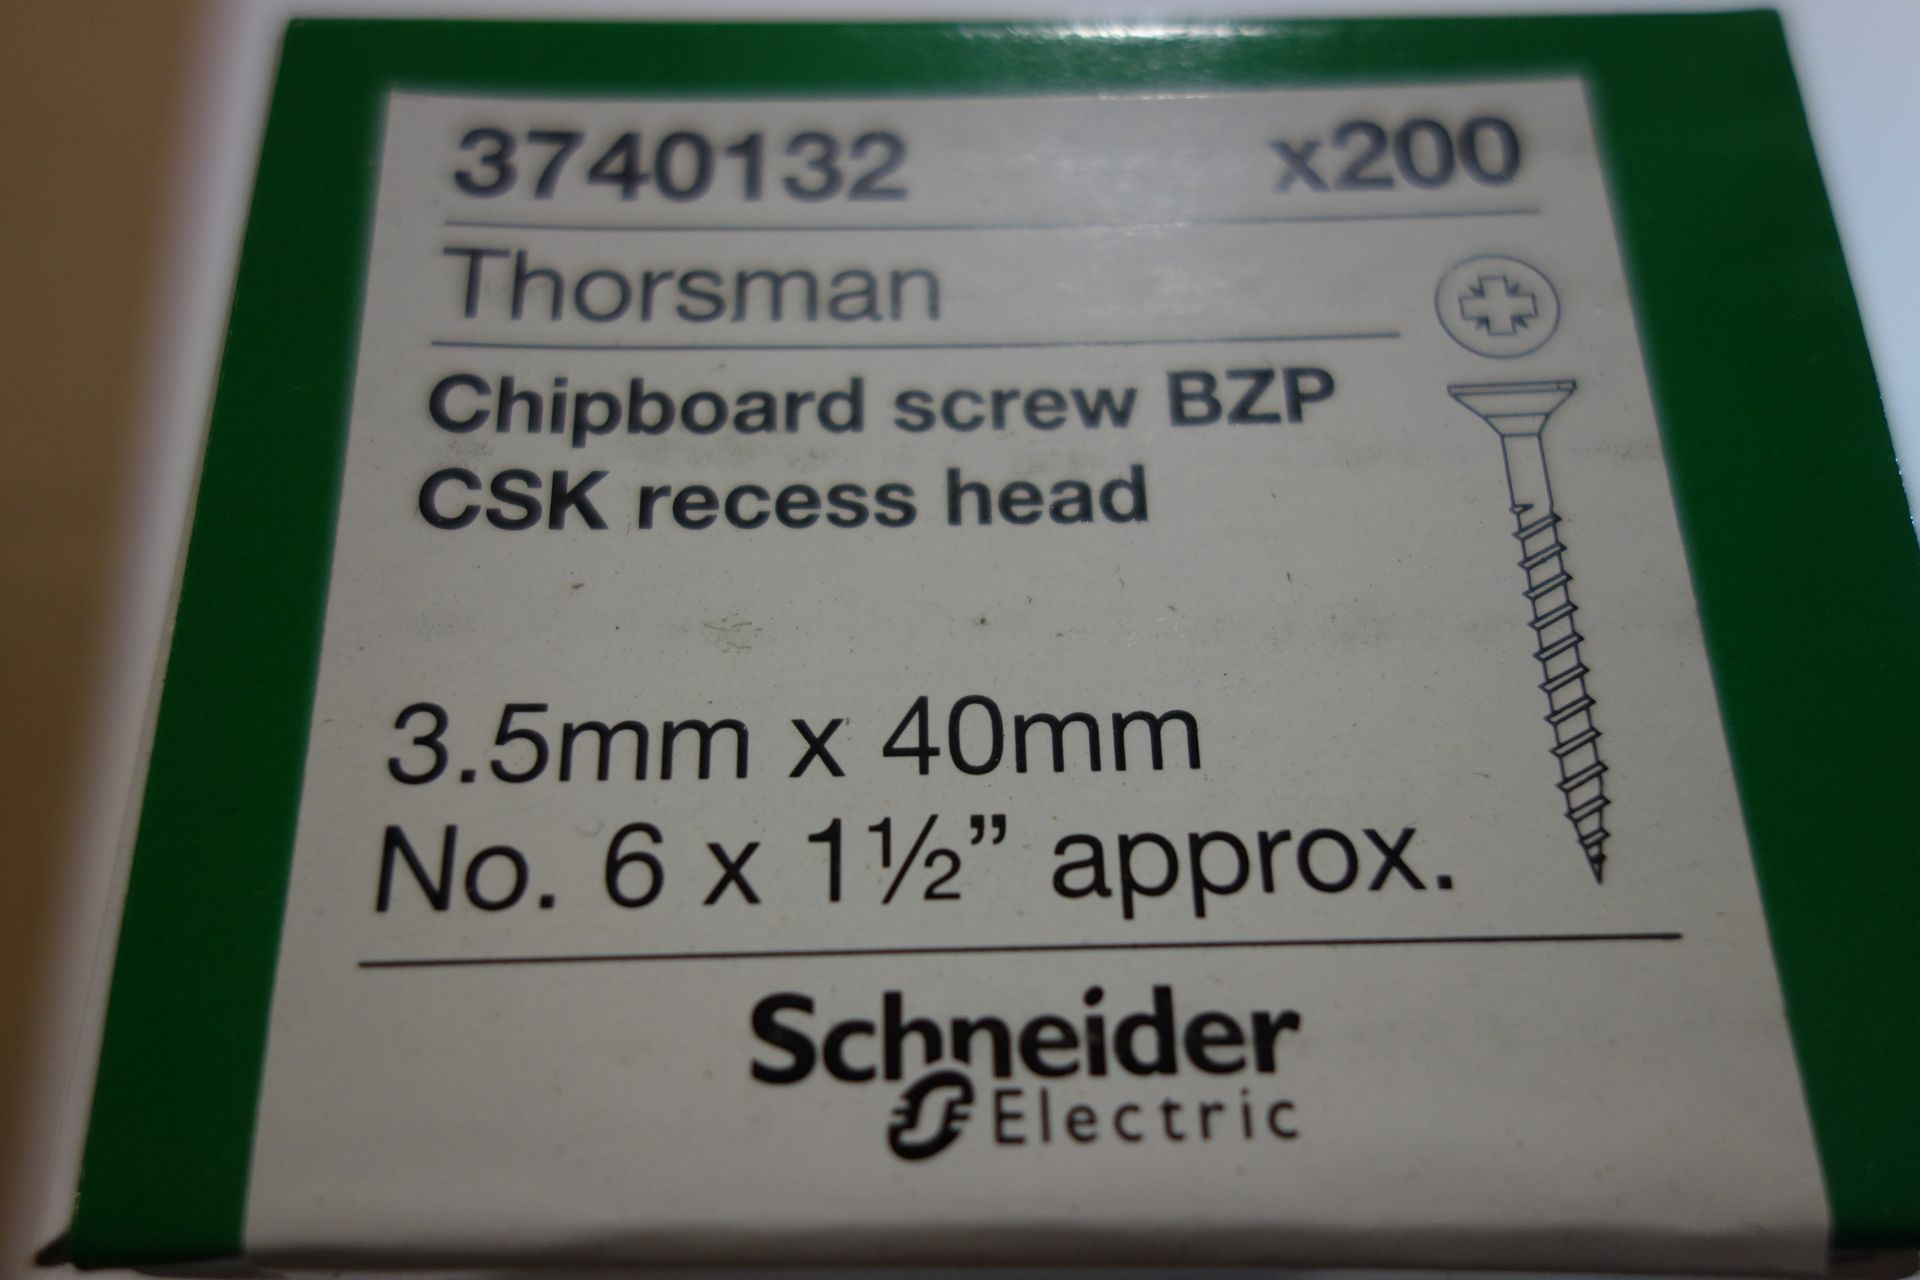 50x Boxes of Schneider 3740132 (Thorsman) Chipboard Screws BZP CSK. Recess Head 3-5mm x 40mm 200x